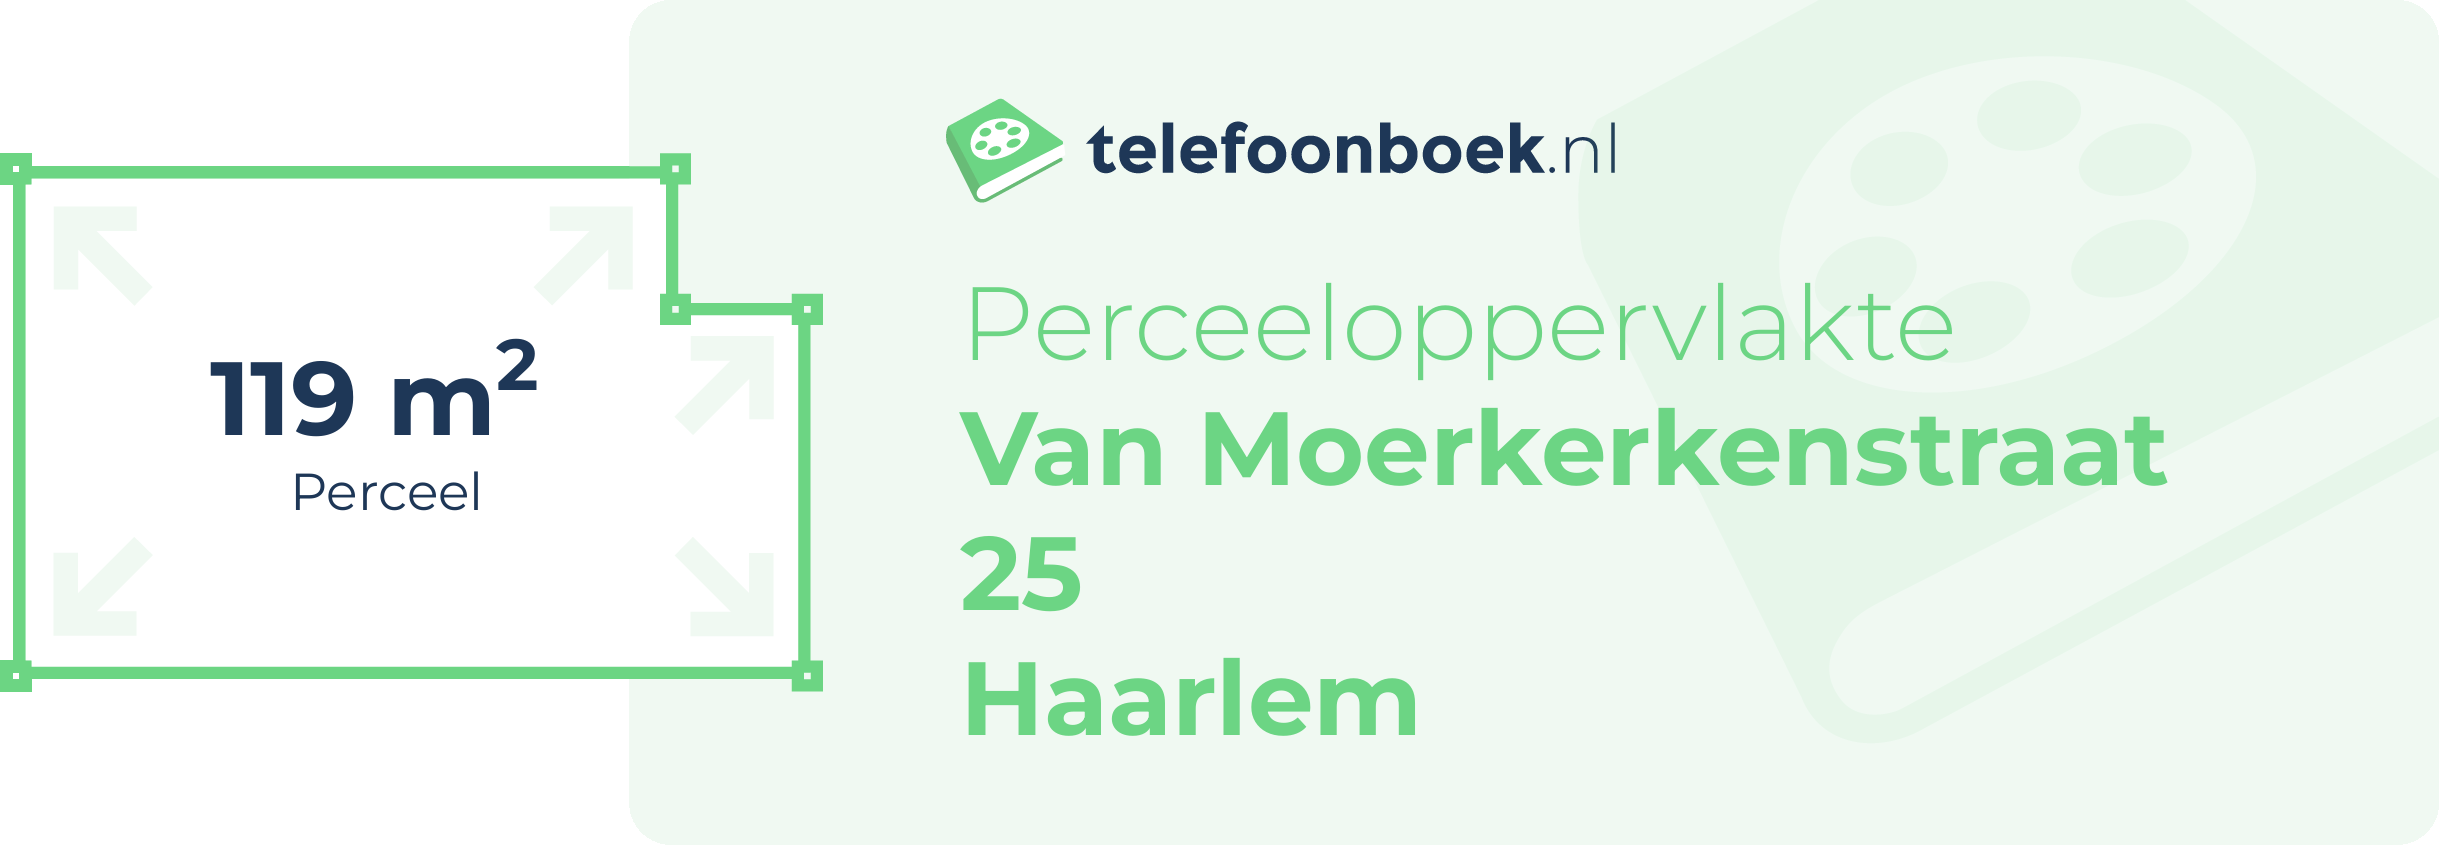 Perceeloppervlakte Van Moerkerkenstraat 25 Haarlem